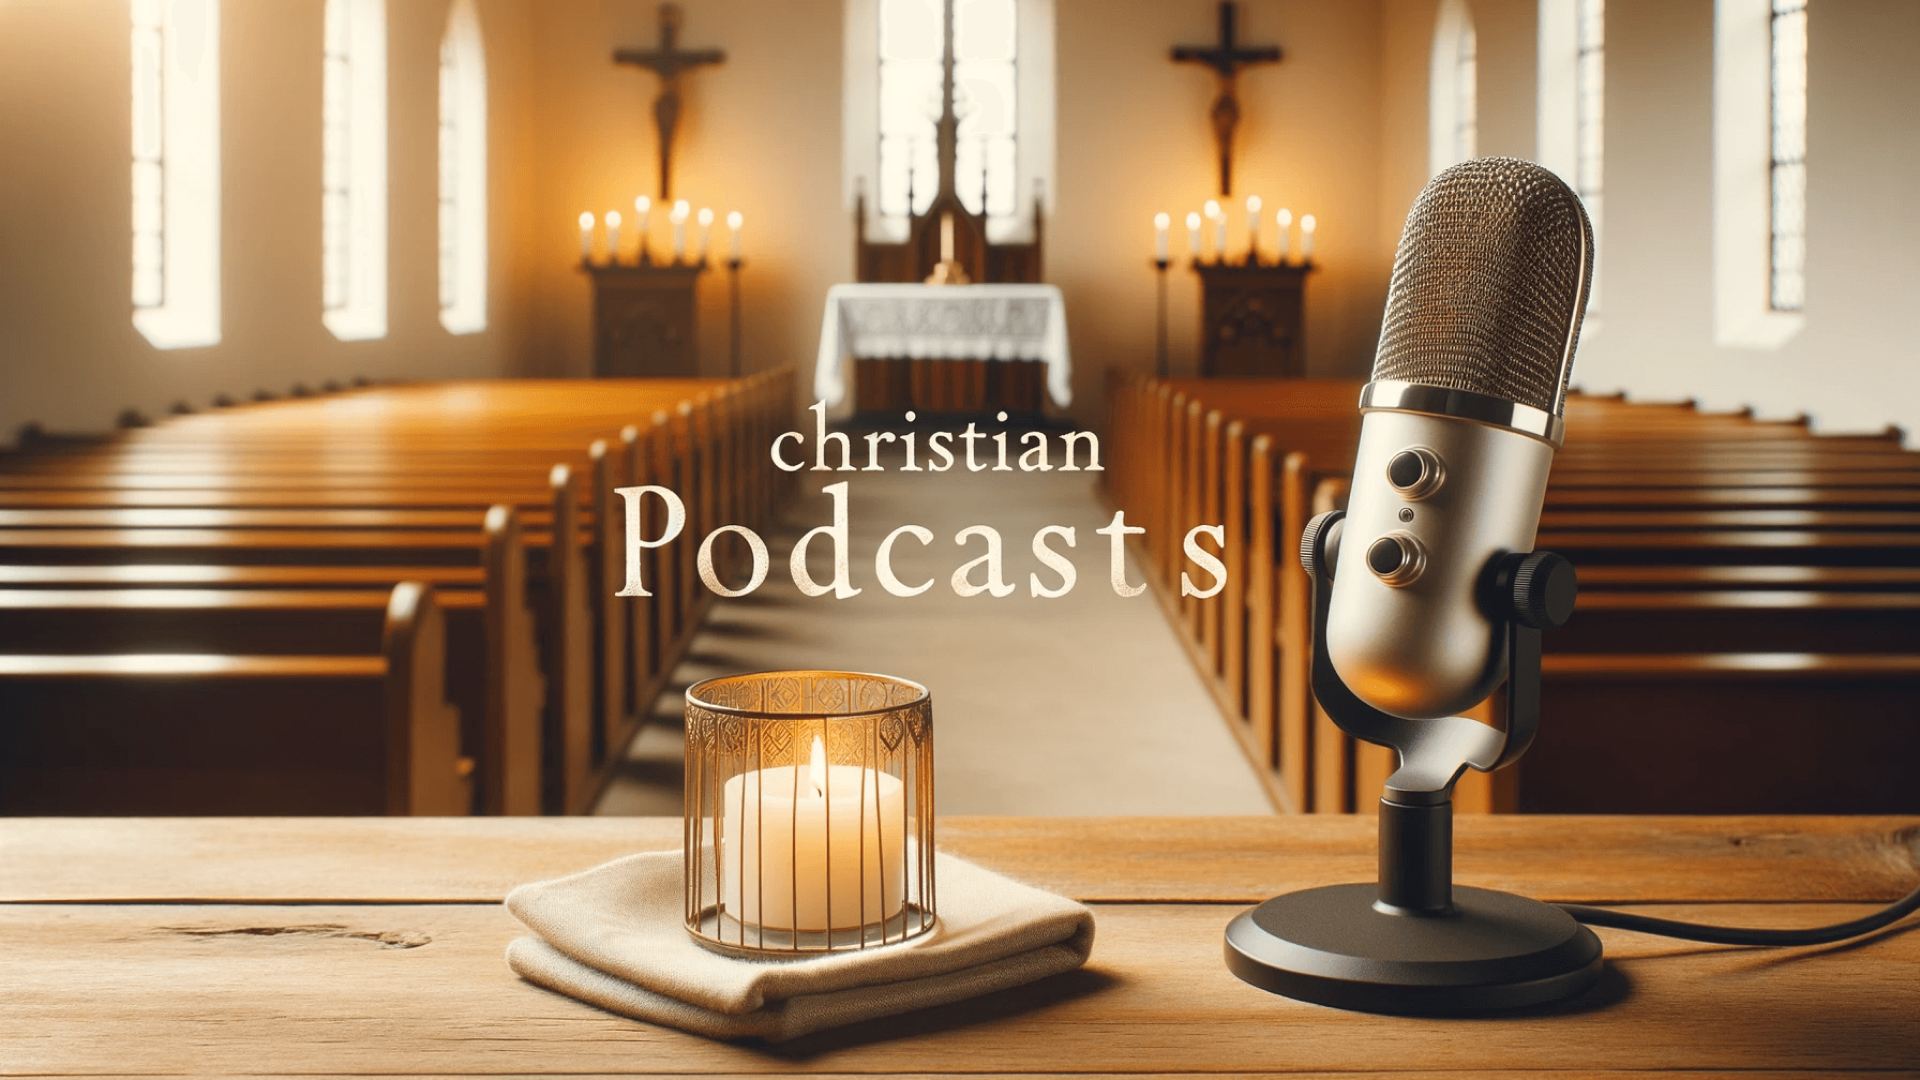 Les 10 meilleurs podcasts chrétiens sur Spotify que vous devriez connaître